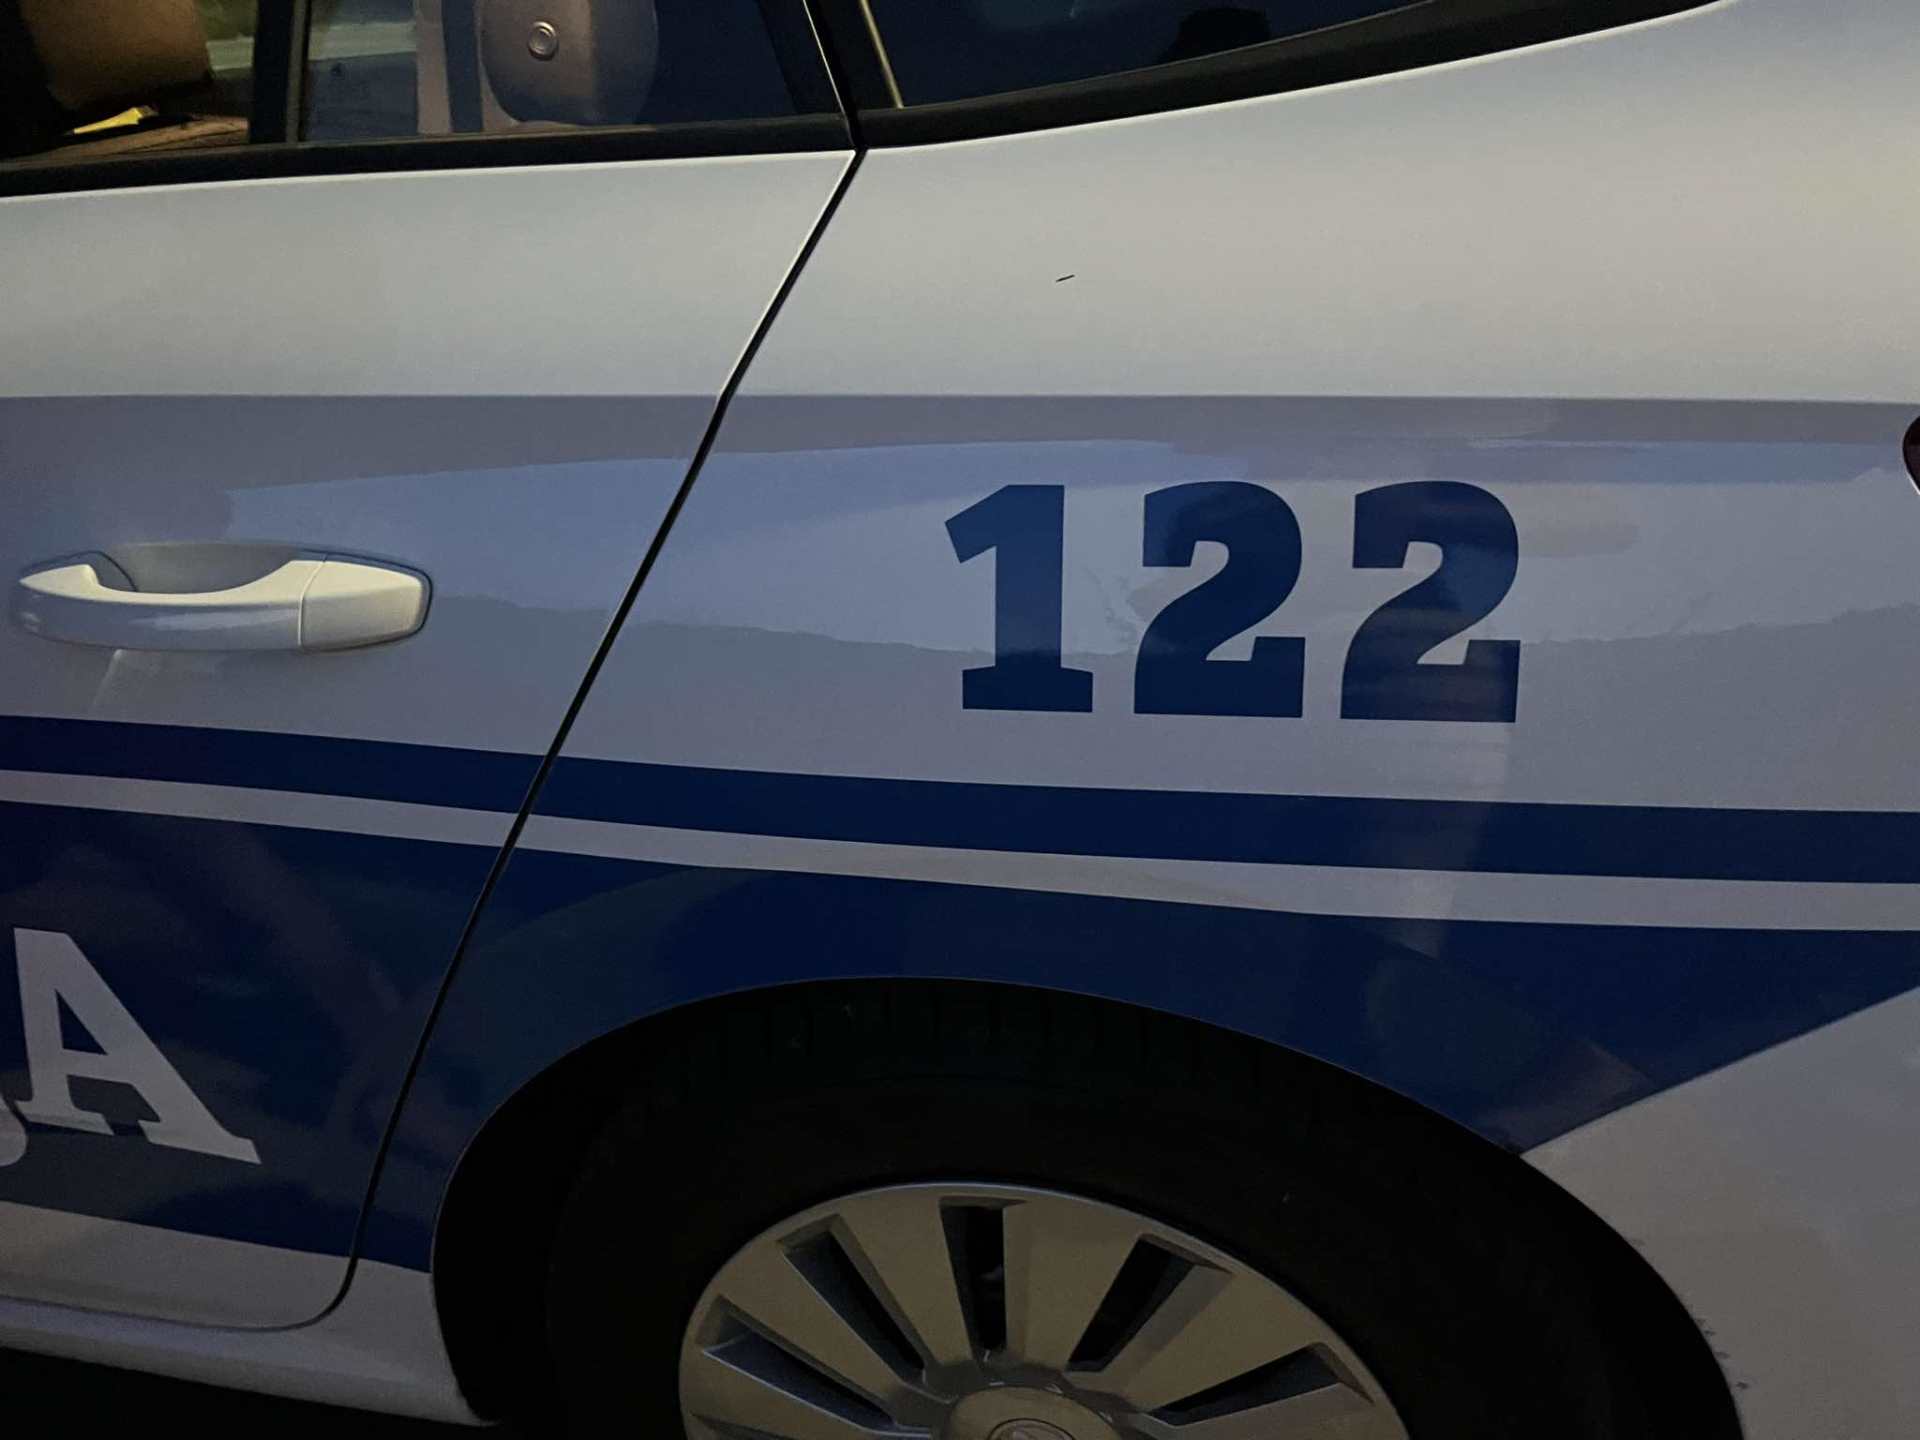  Masovna tuča u Nikšiću, uhapšena jedna osoba 